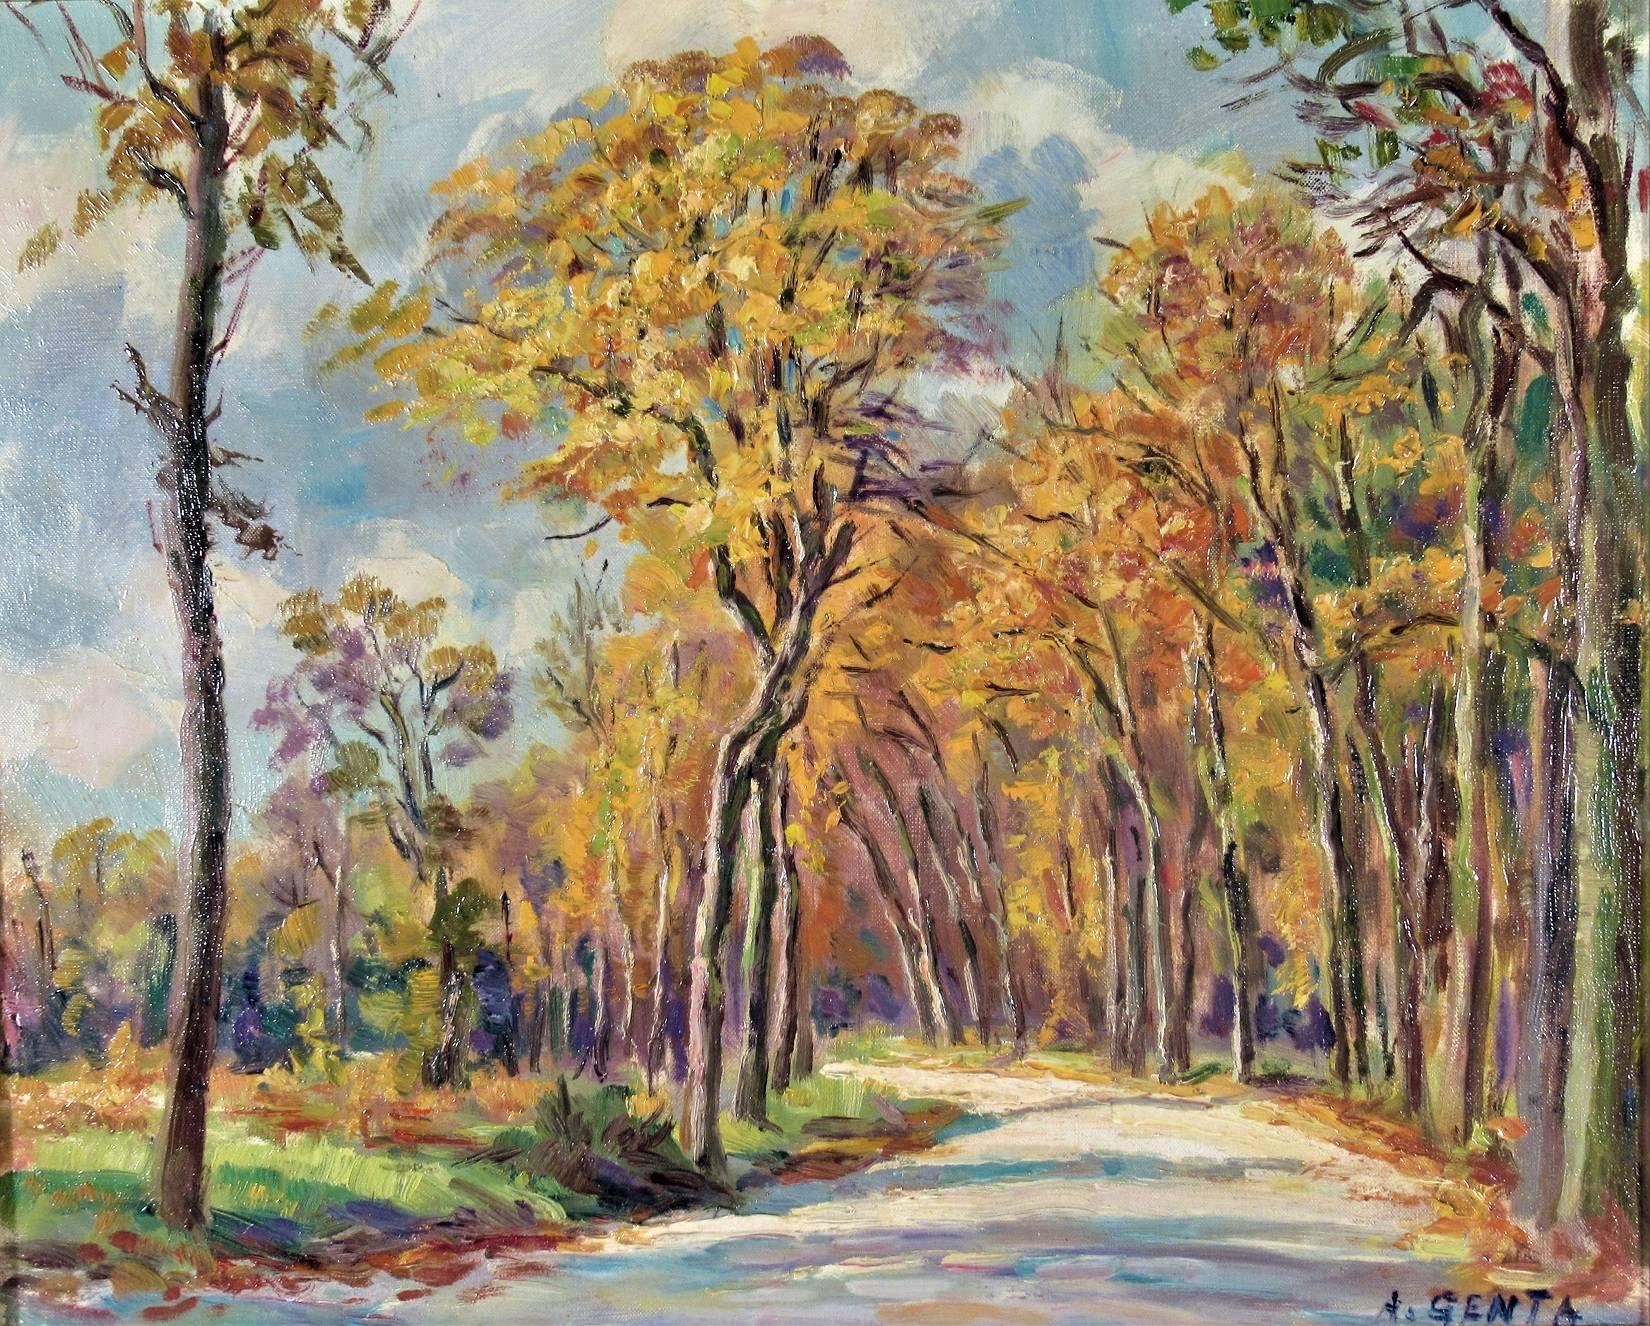 Le Bois de Vicennes - Painting by Albert Genta